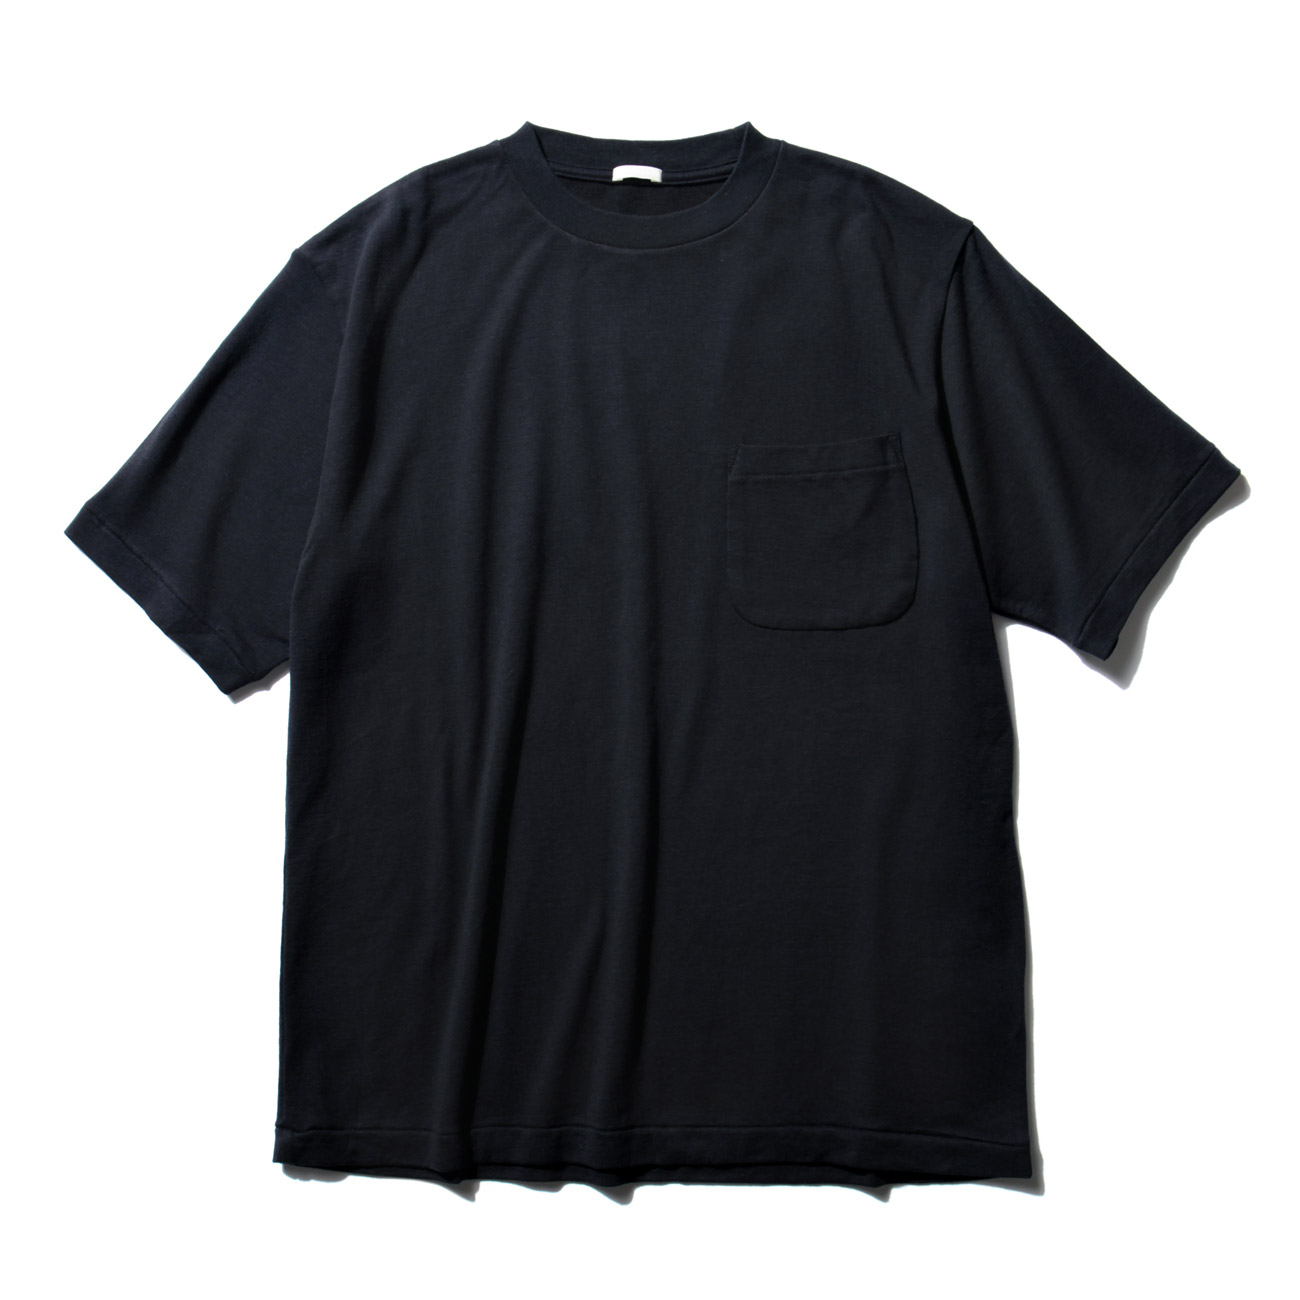 【2色セット】COMOLI コットンシルク 裏毛 半袖 クルー  Tシャツサイズ1